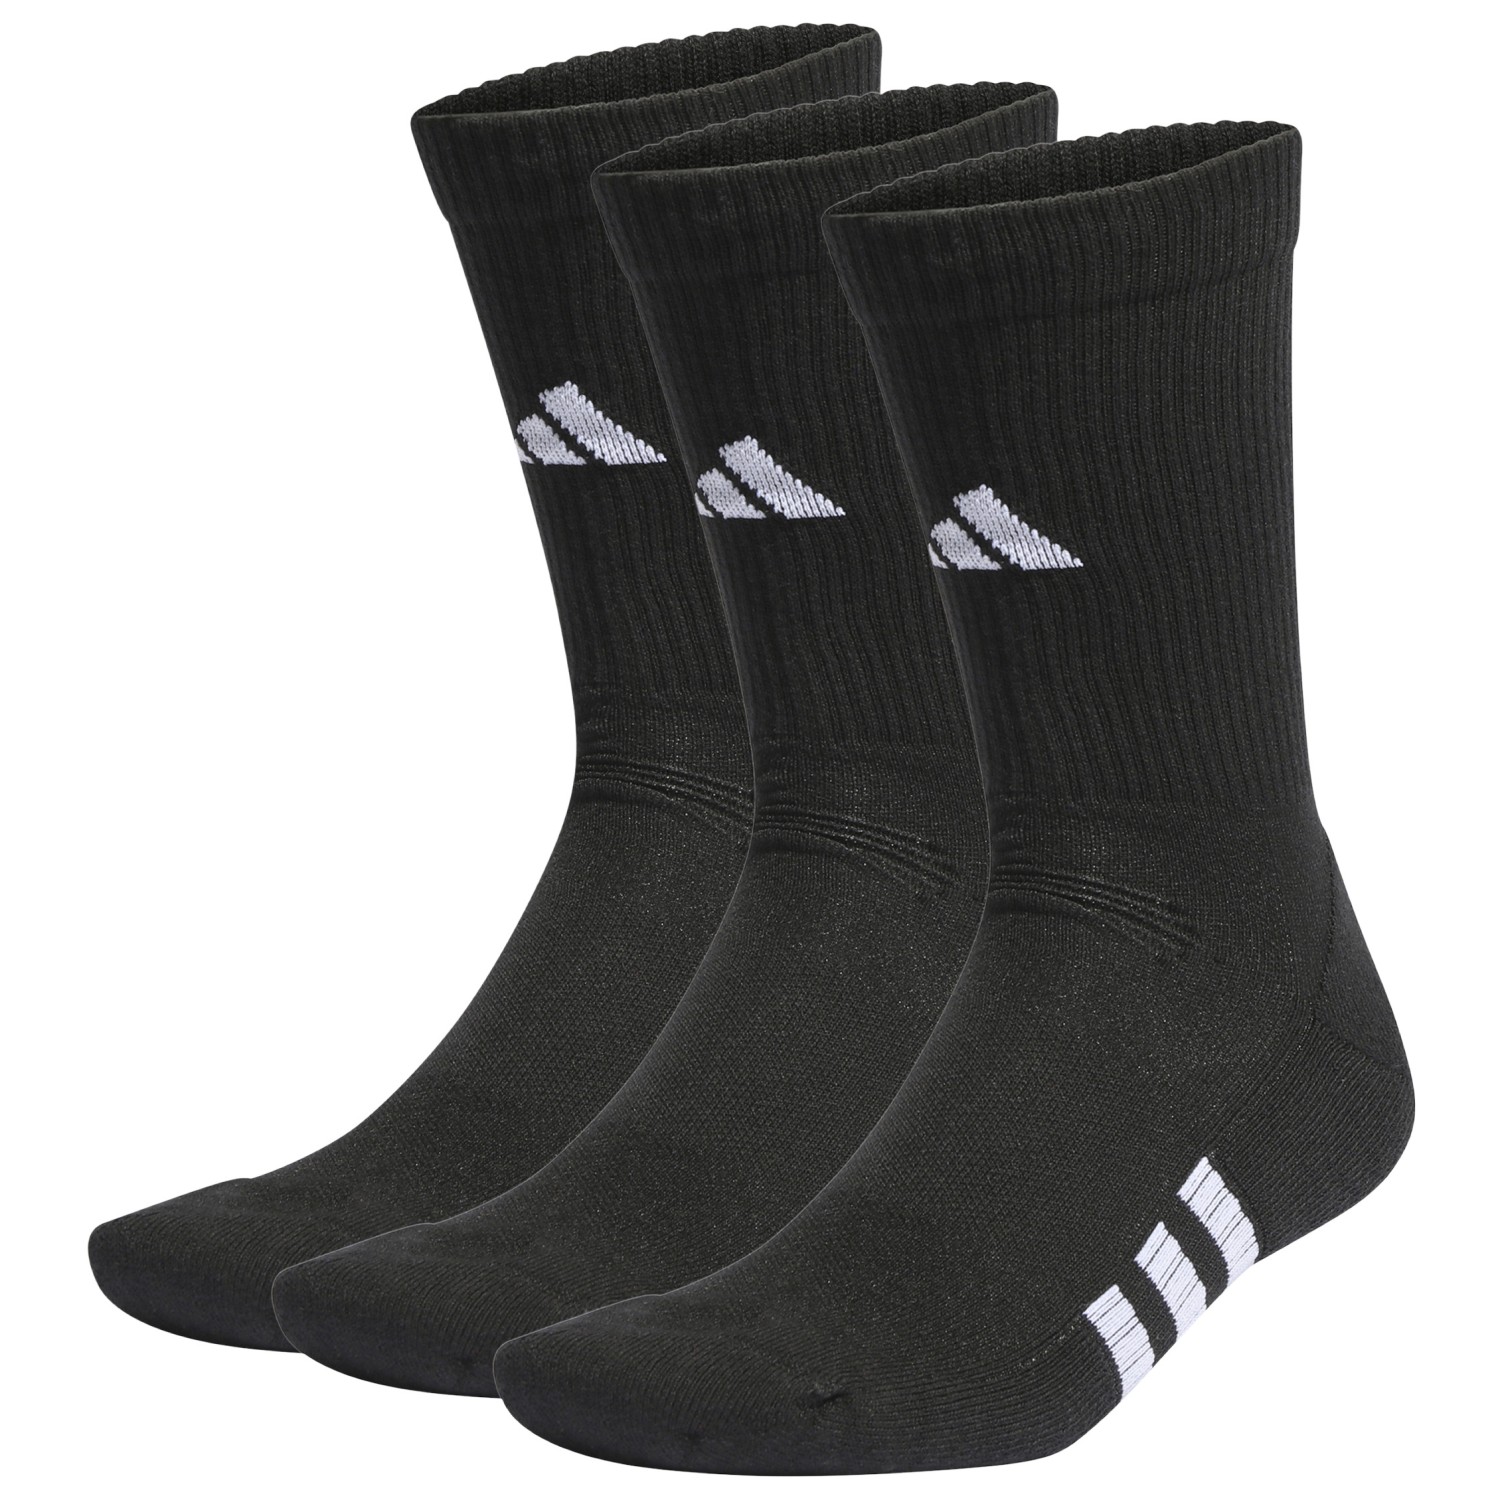 Многофункциональные носки Adidas Performance Cushioned Crew 3 Pack, цвет Black/Black/Black цена и фото